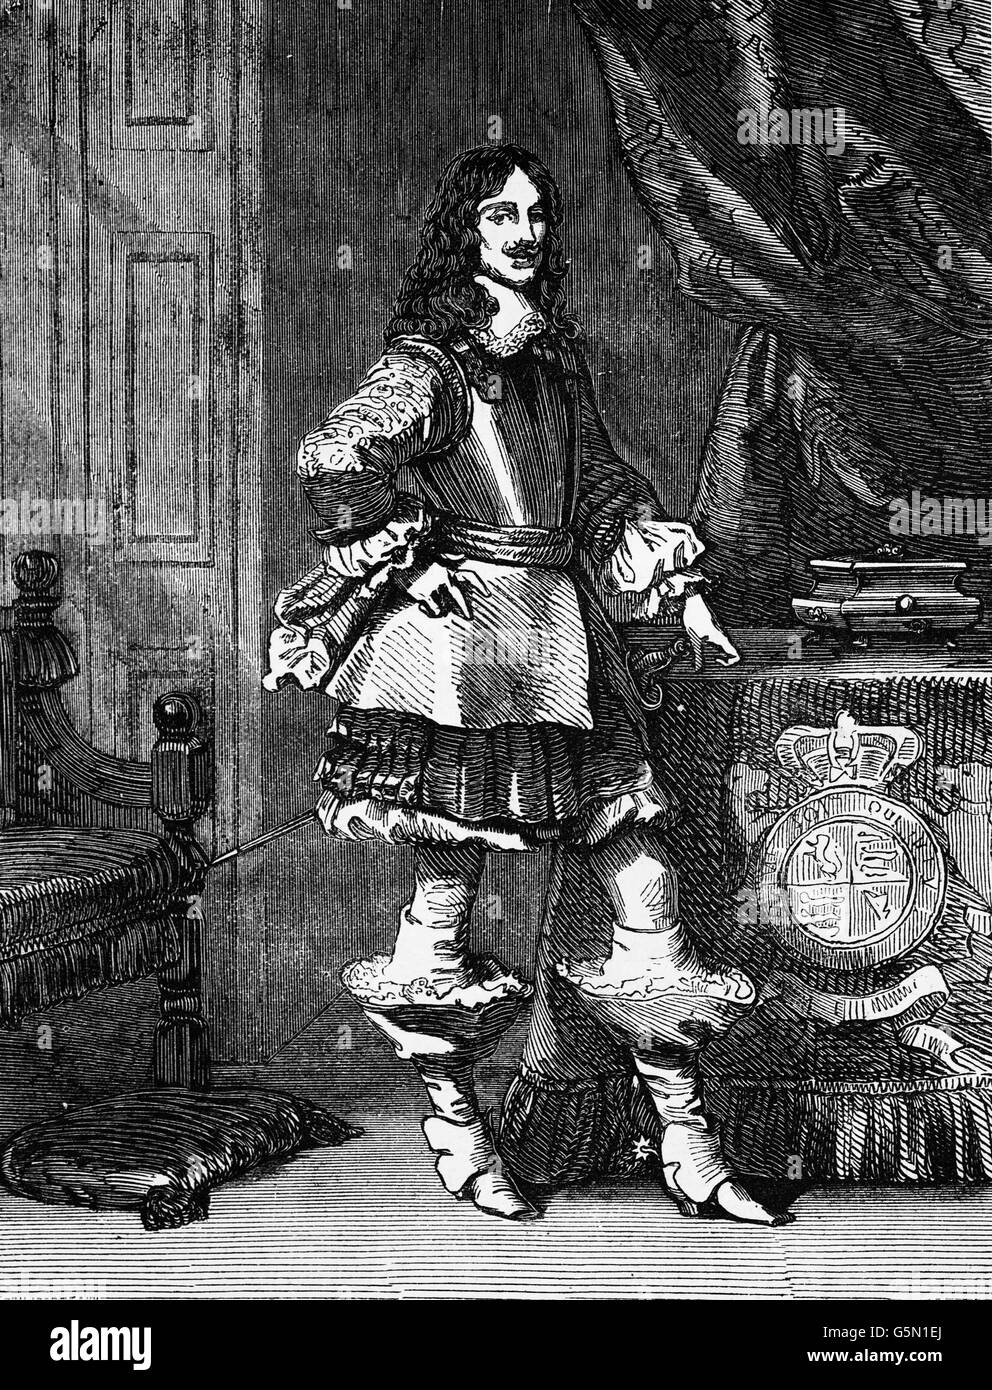 Carlos II fue restaurado como monarca de los Tres Reinos de Inglaterra, Escocia e Irlanda en 1660. Su padre, Carlos I, fue ejecutado en Whitehall el 30 de enero de 1649, en el momento culminante de la guerra civil inglesa. Foto de stock